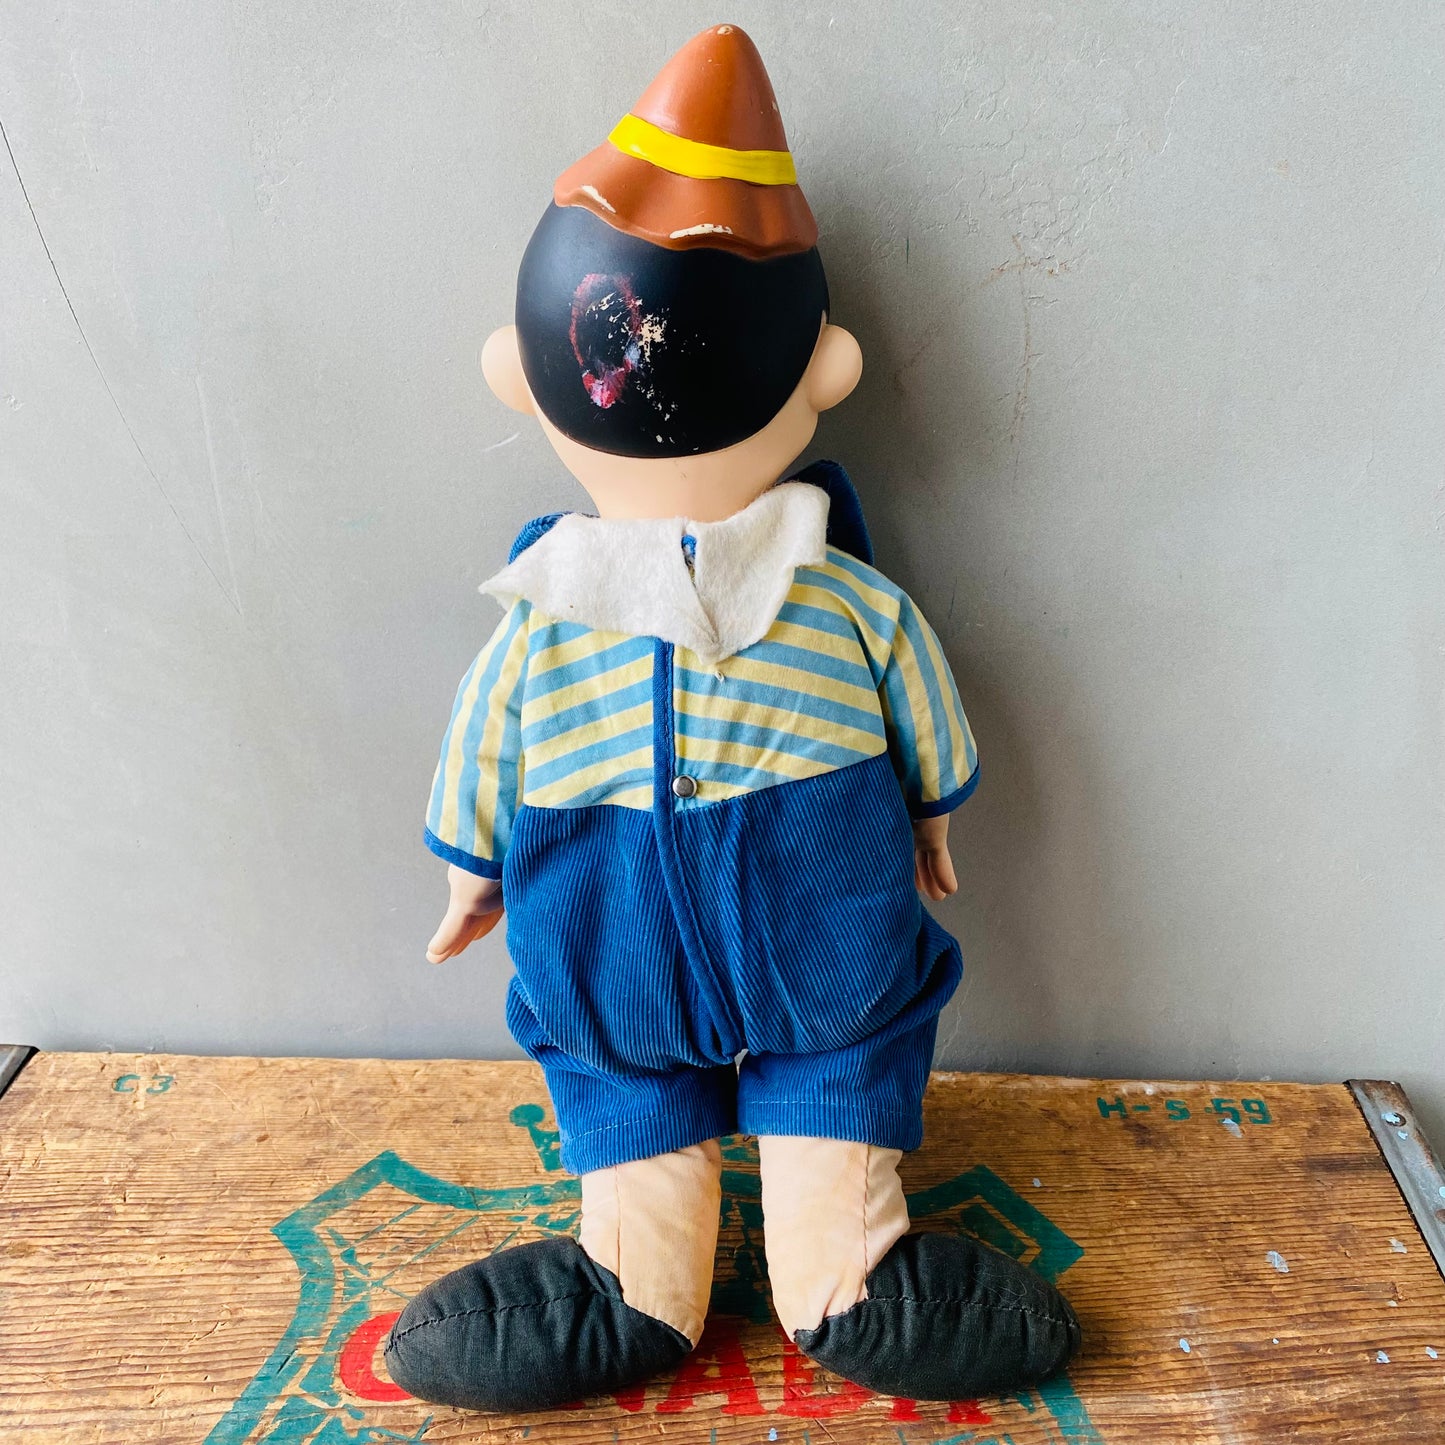 【1965 USA vintage】KNICKER BOCKER rubber face doll ピノキオ